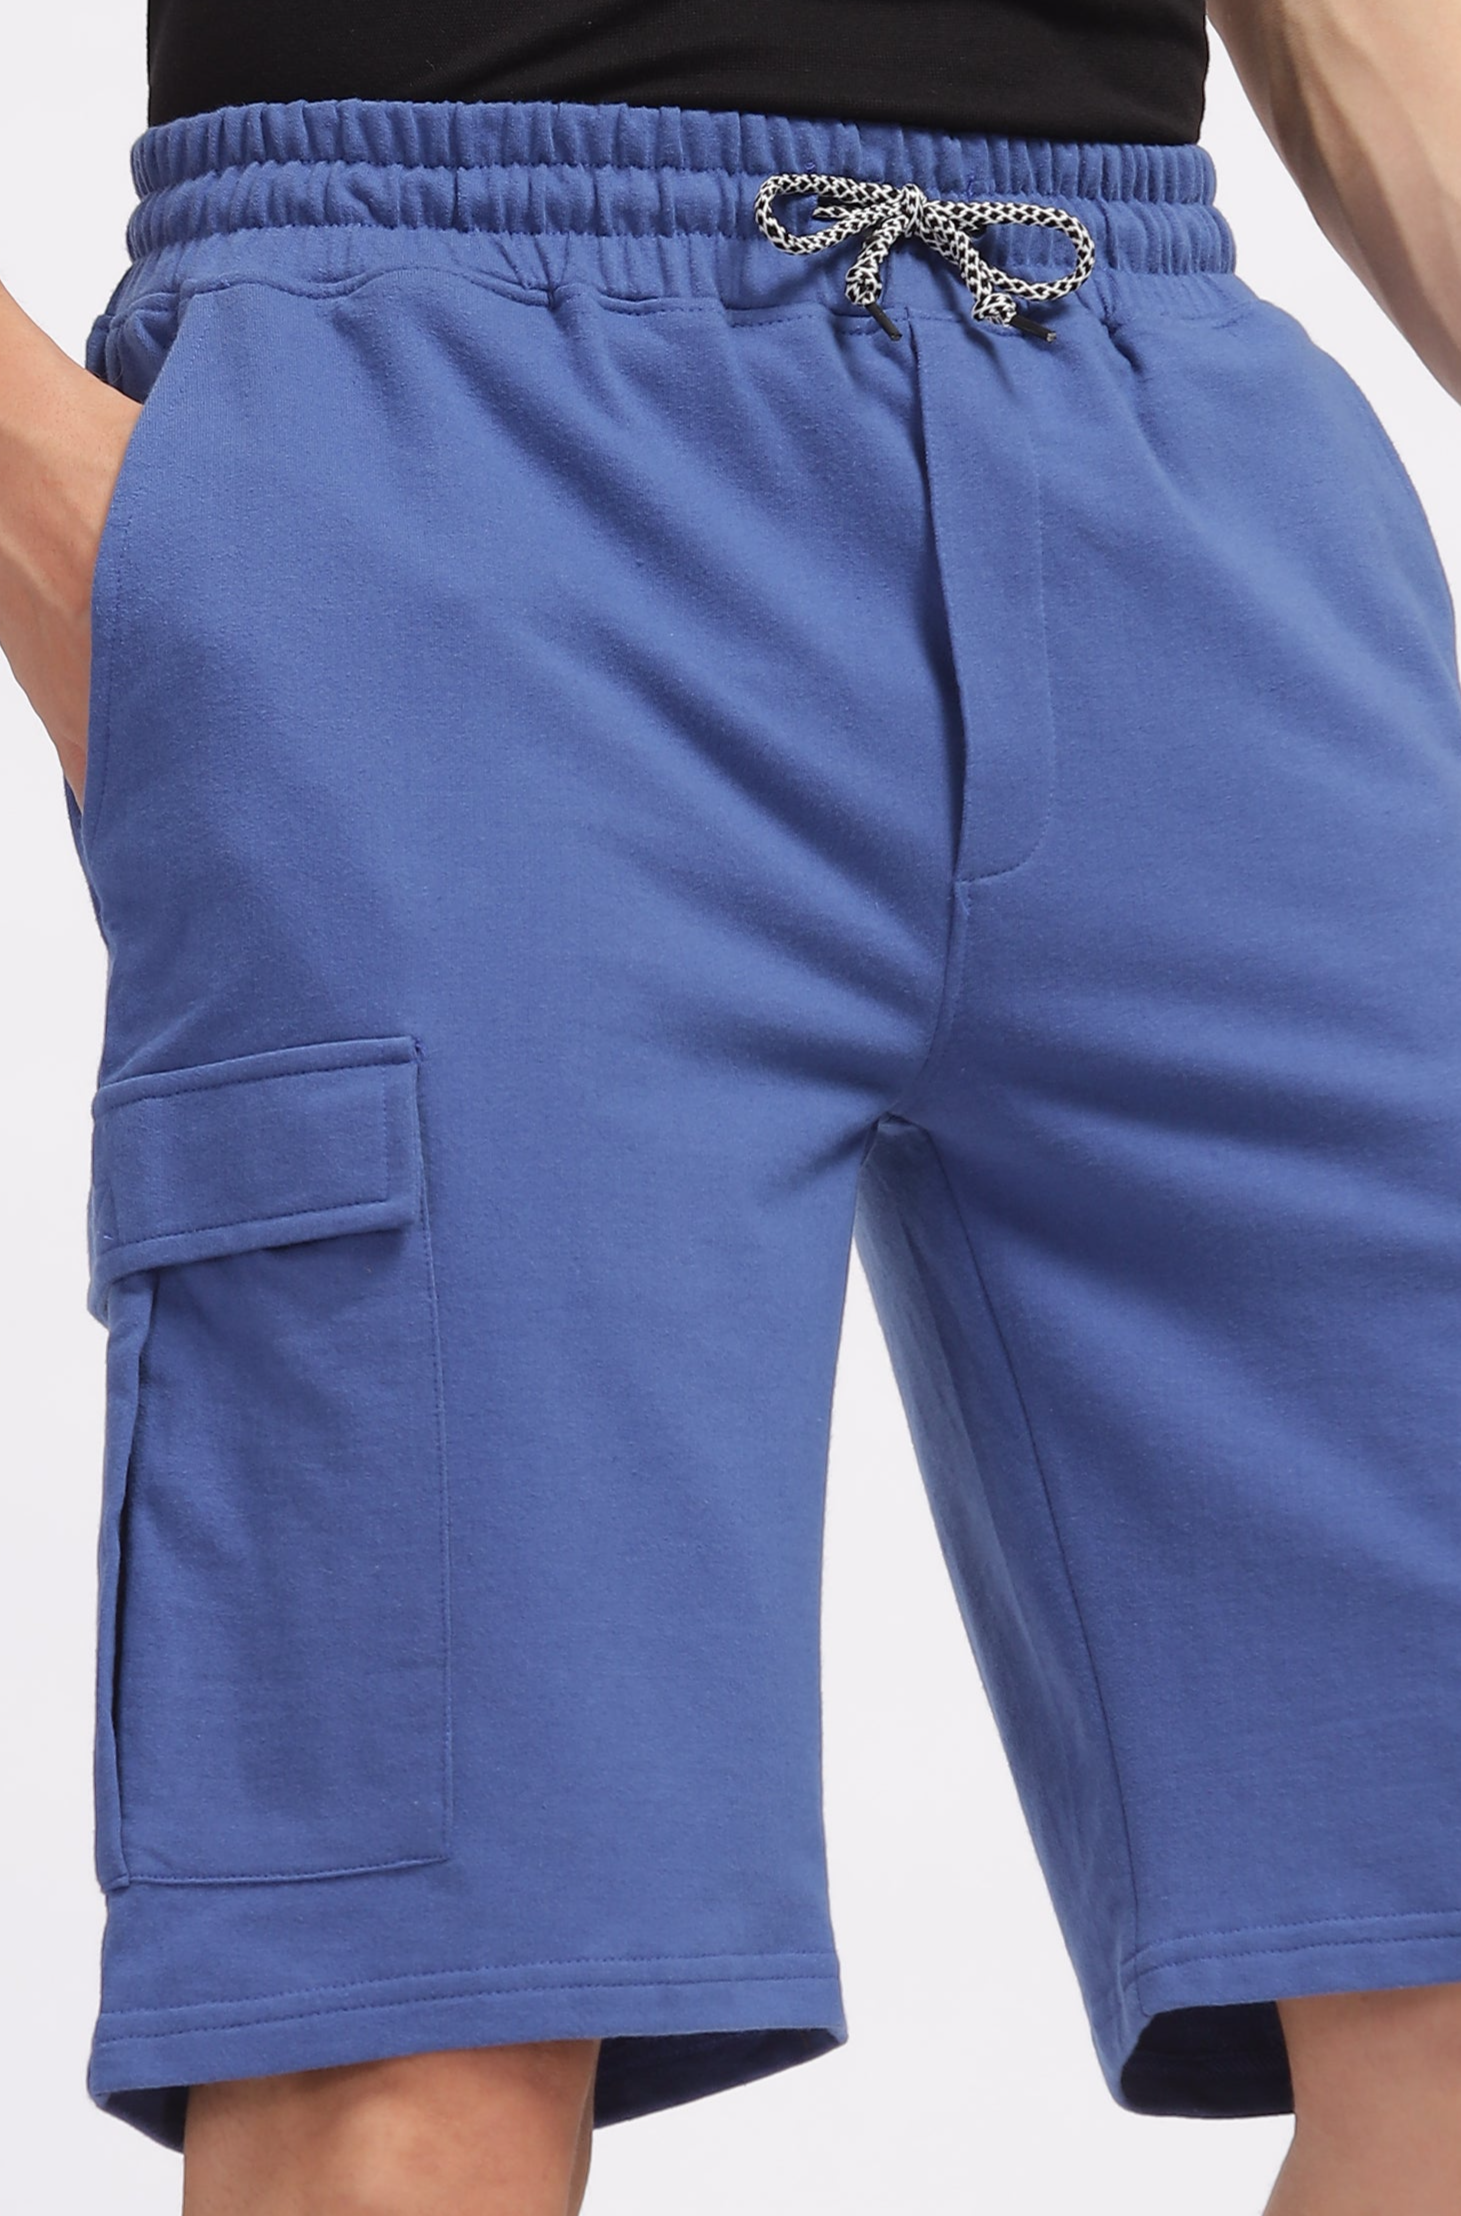 Blue Premium Loop Knit Cotton Shorts